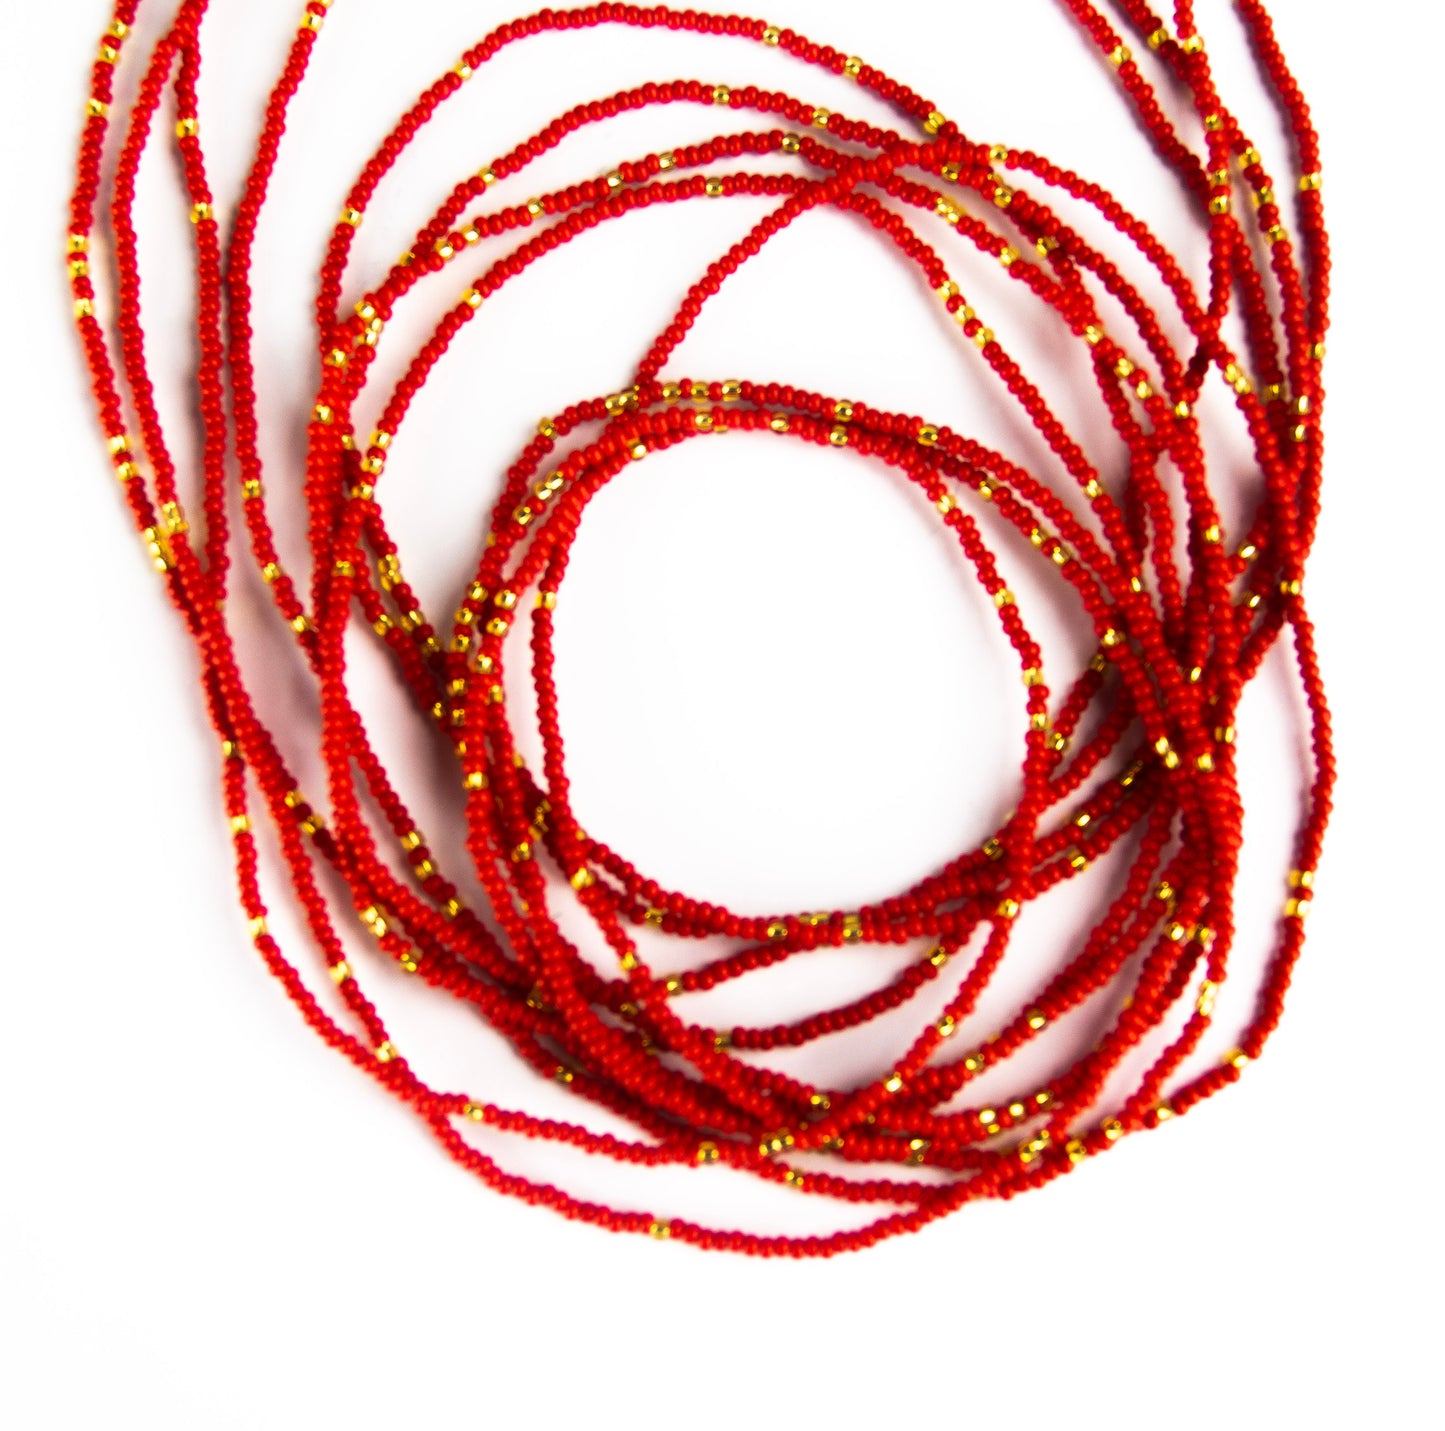 Fire red waist beads